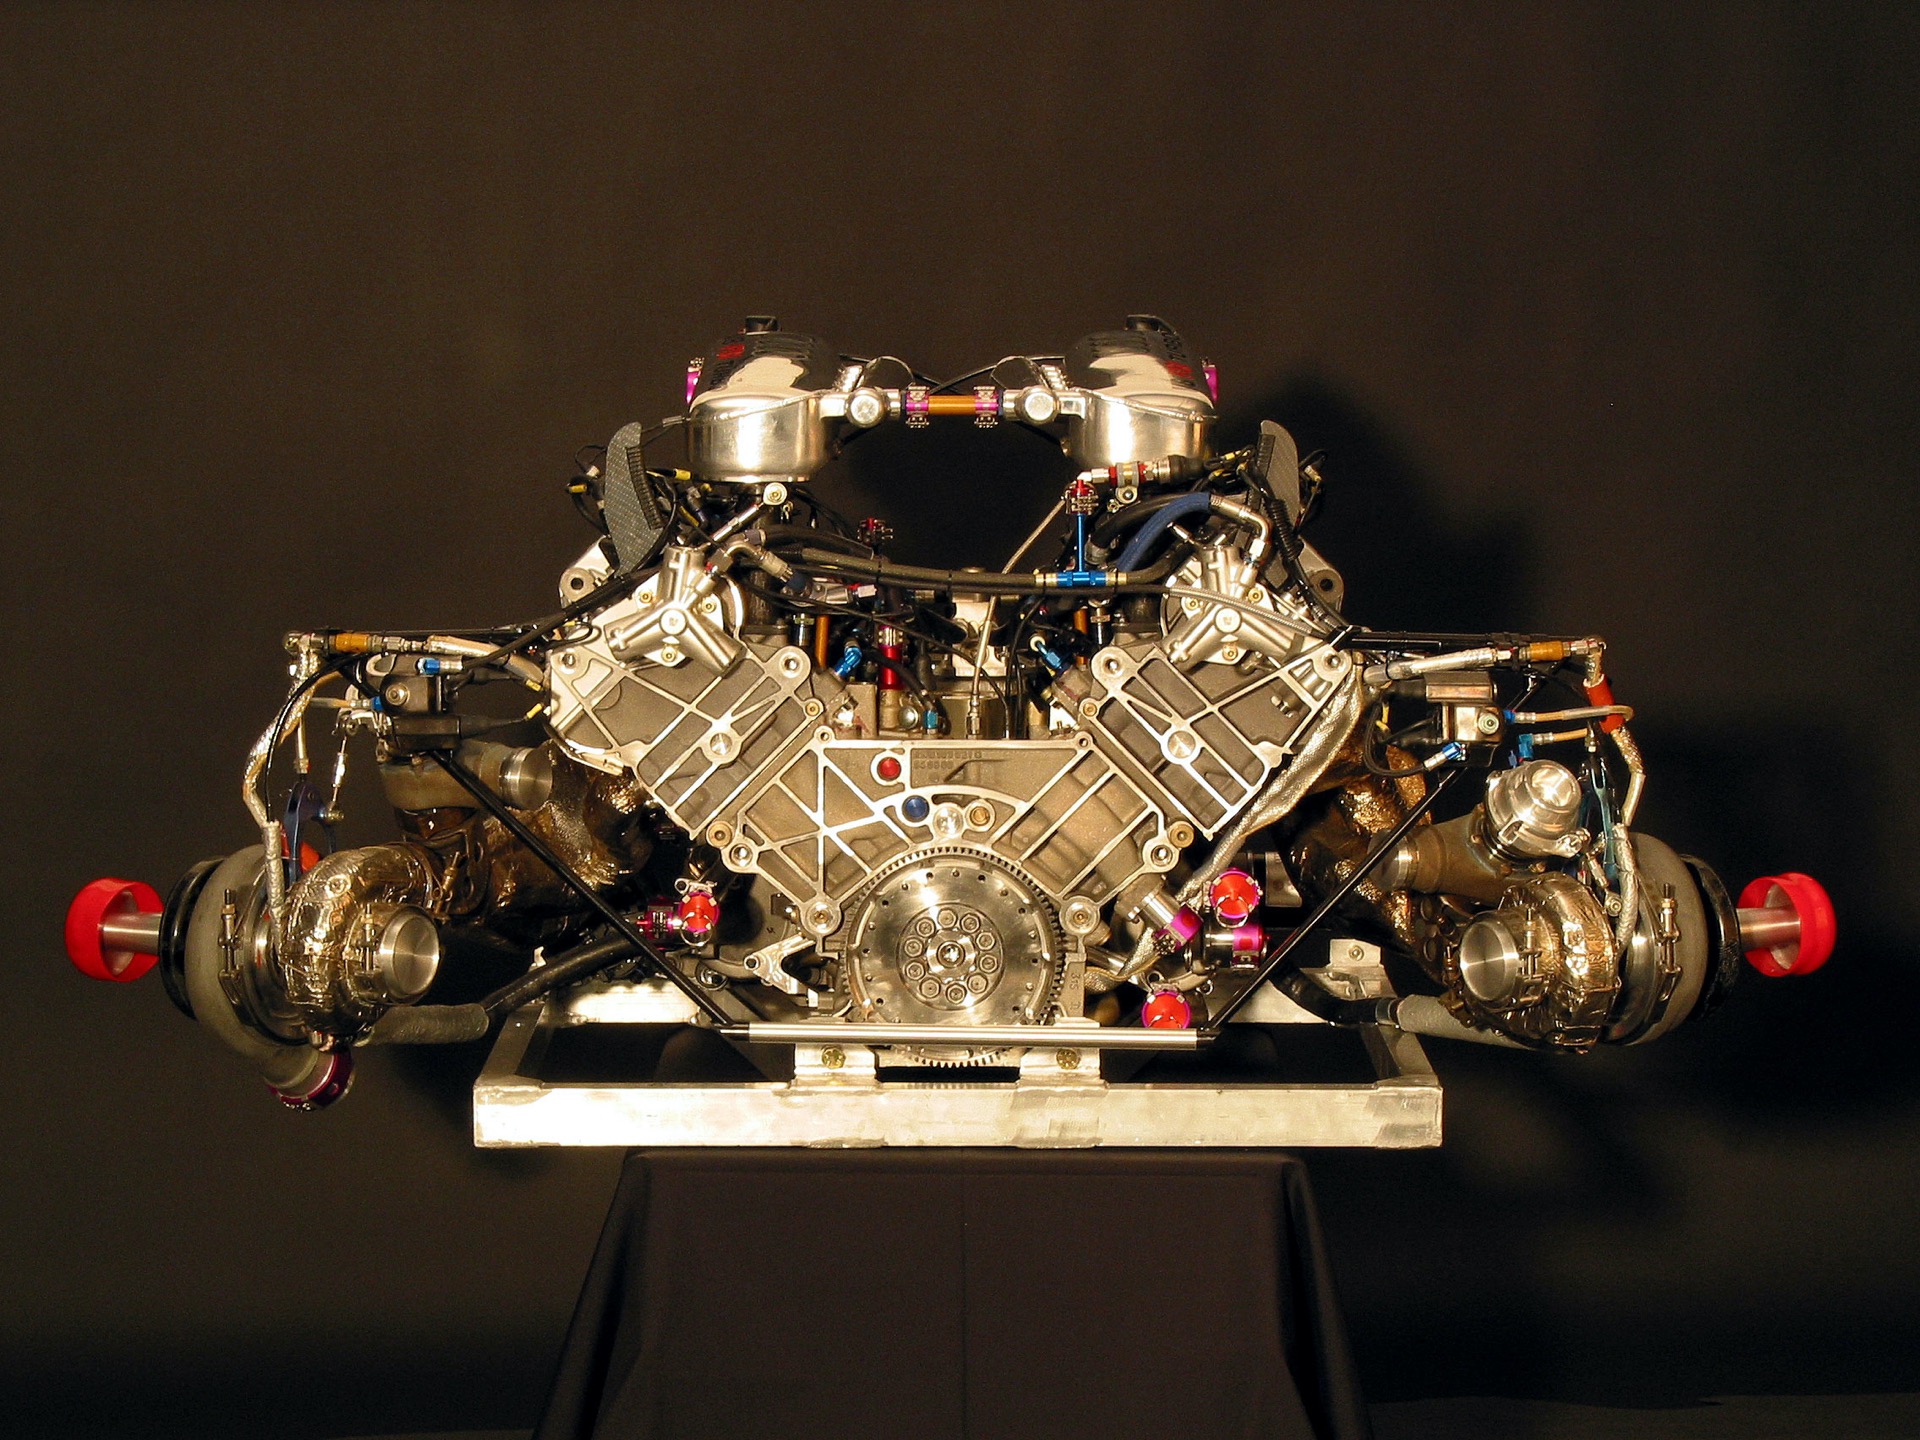 En la imagen, un motor de competición con configuración "V-cold", con los turbocompresores fuera de la V que forman los cilindros.